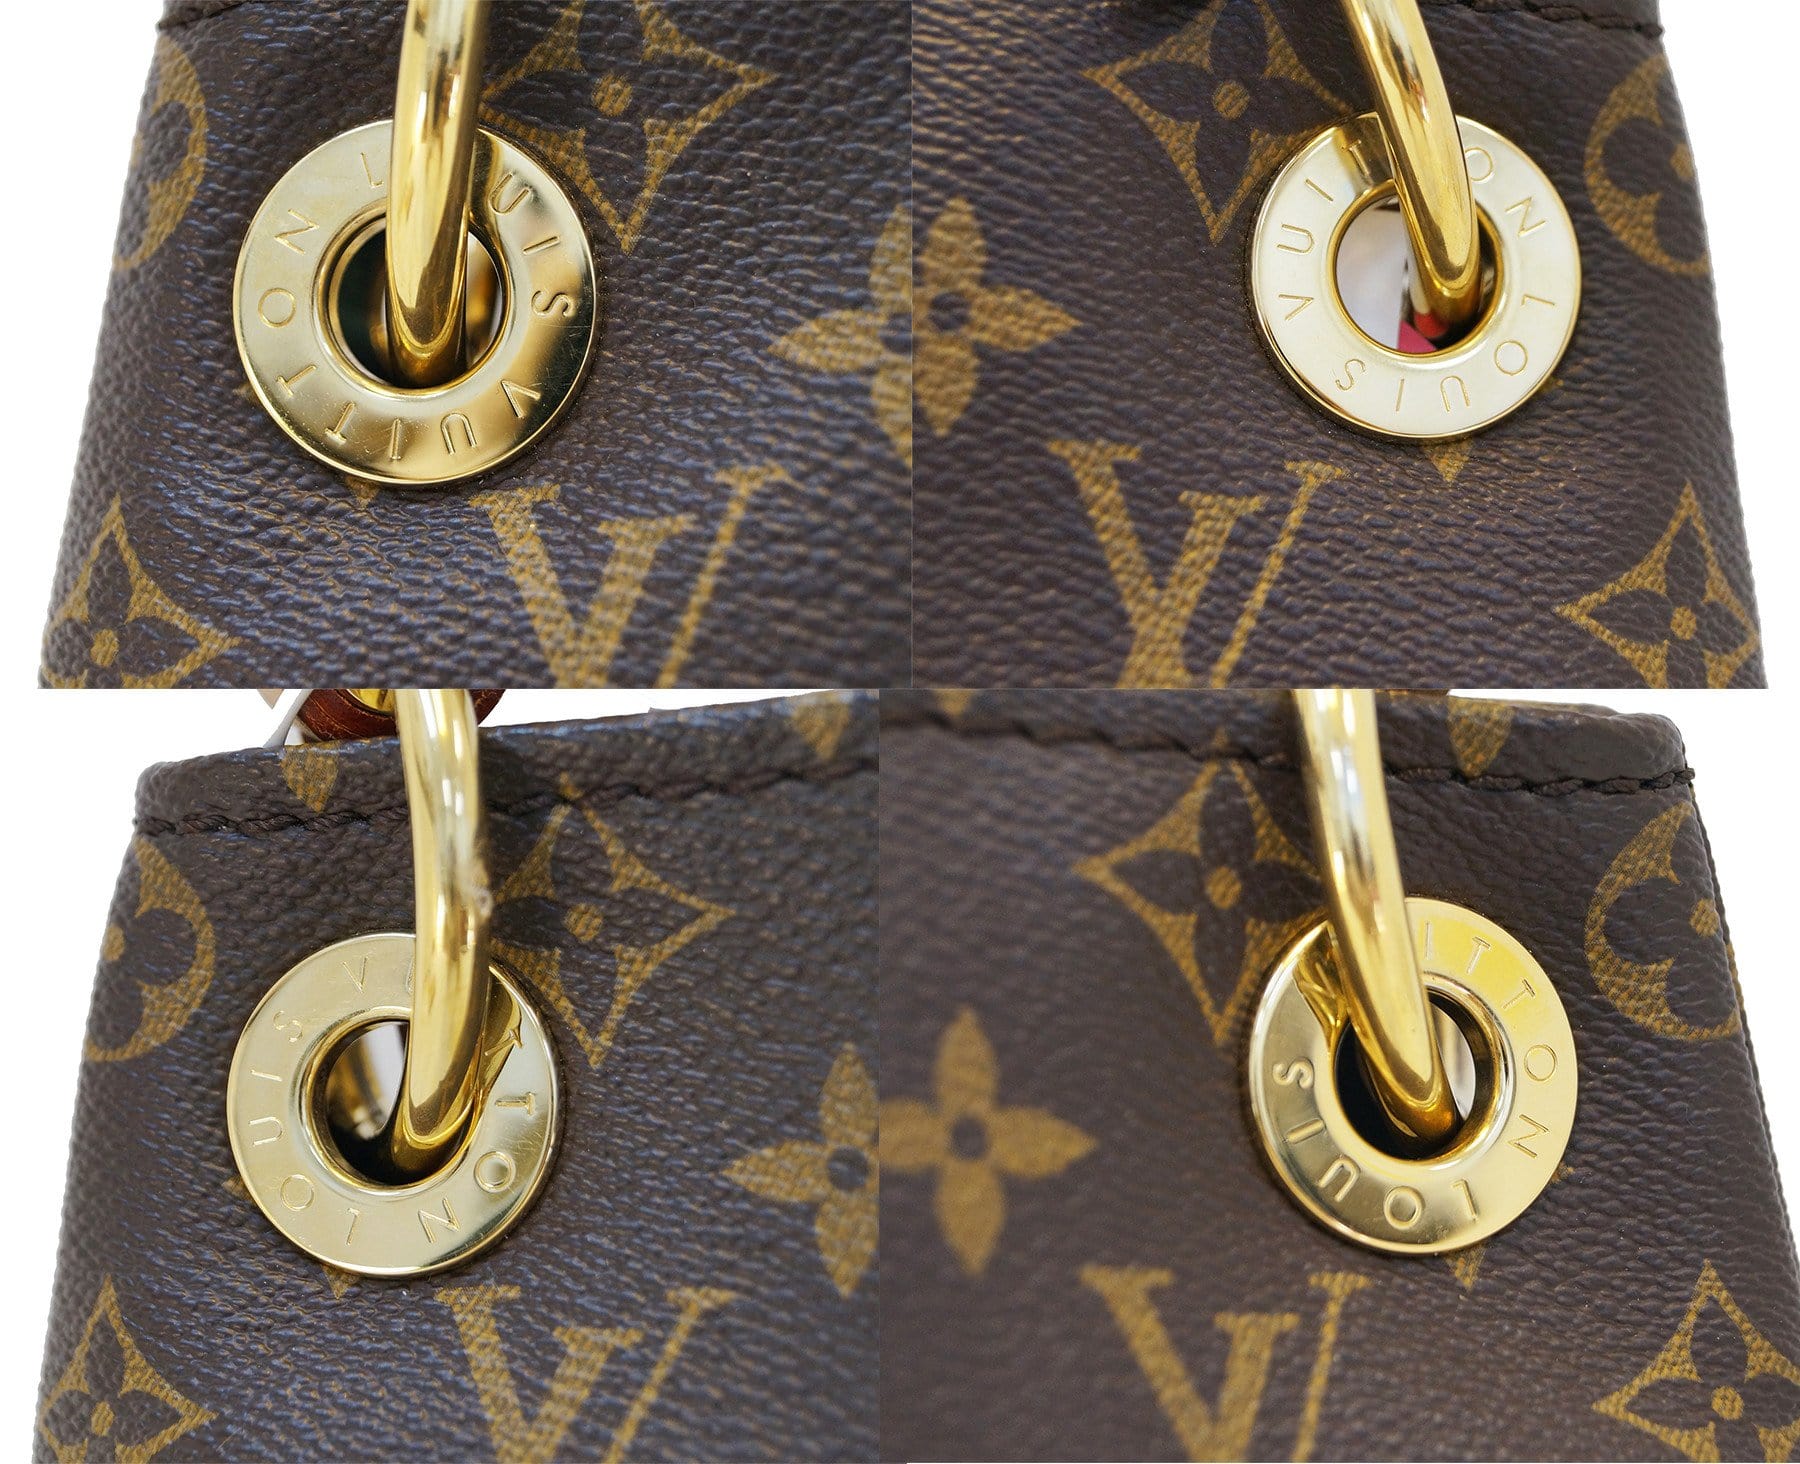 Louis Vuitton Monogram Canvas Artsy MM Bag Louis Vuitton | The Luxury Closet